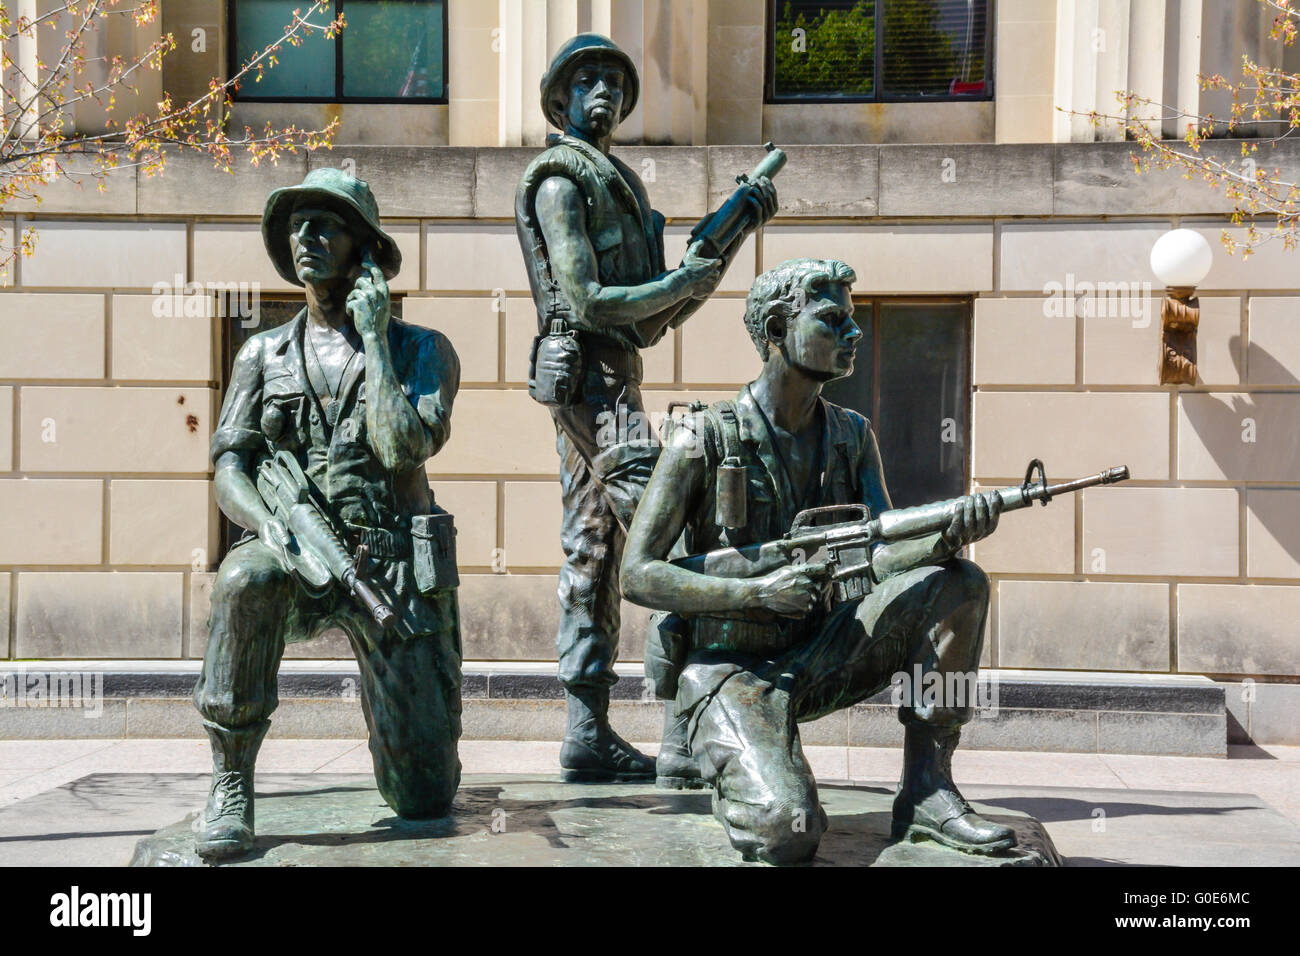 Memorial plaza avec les soldats de la guerre du Vietnam l'art de bronze sculptures, l'honneur des anciens combattants dans le centre de Nashville, TN Banque D'Images